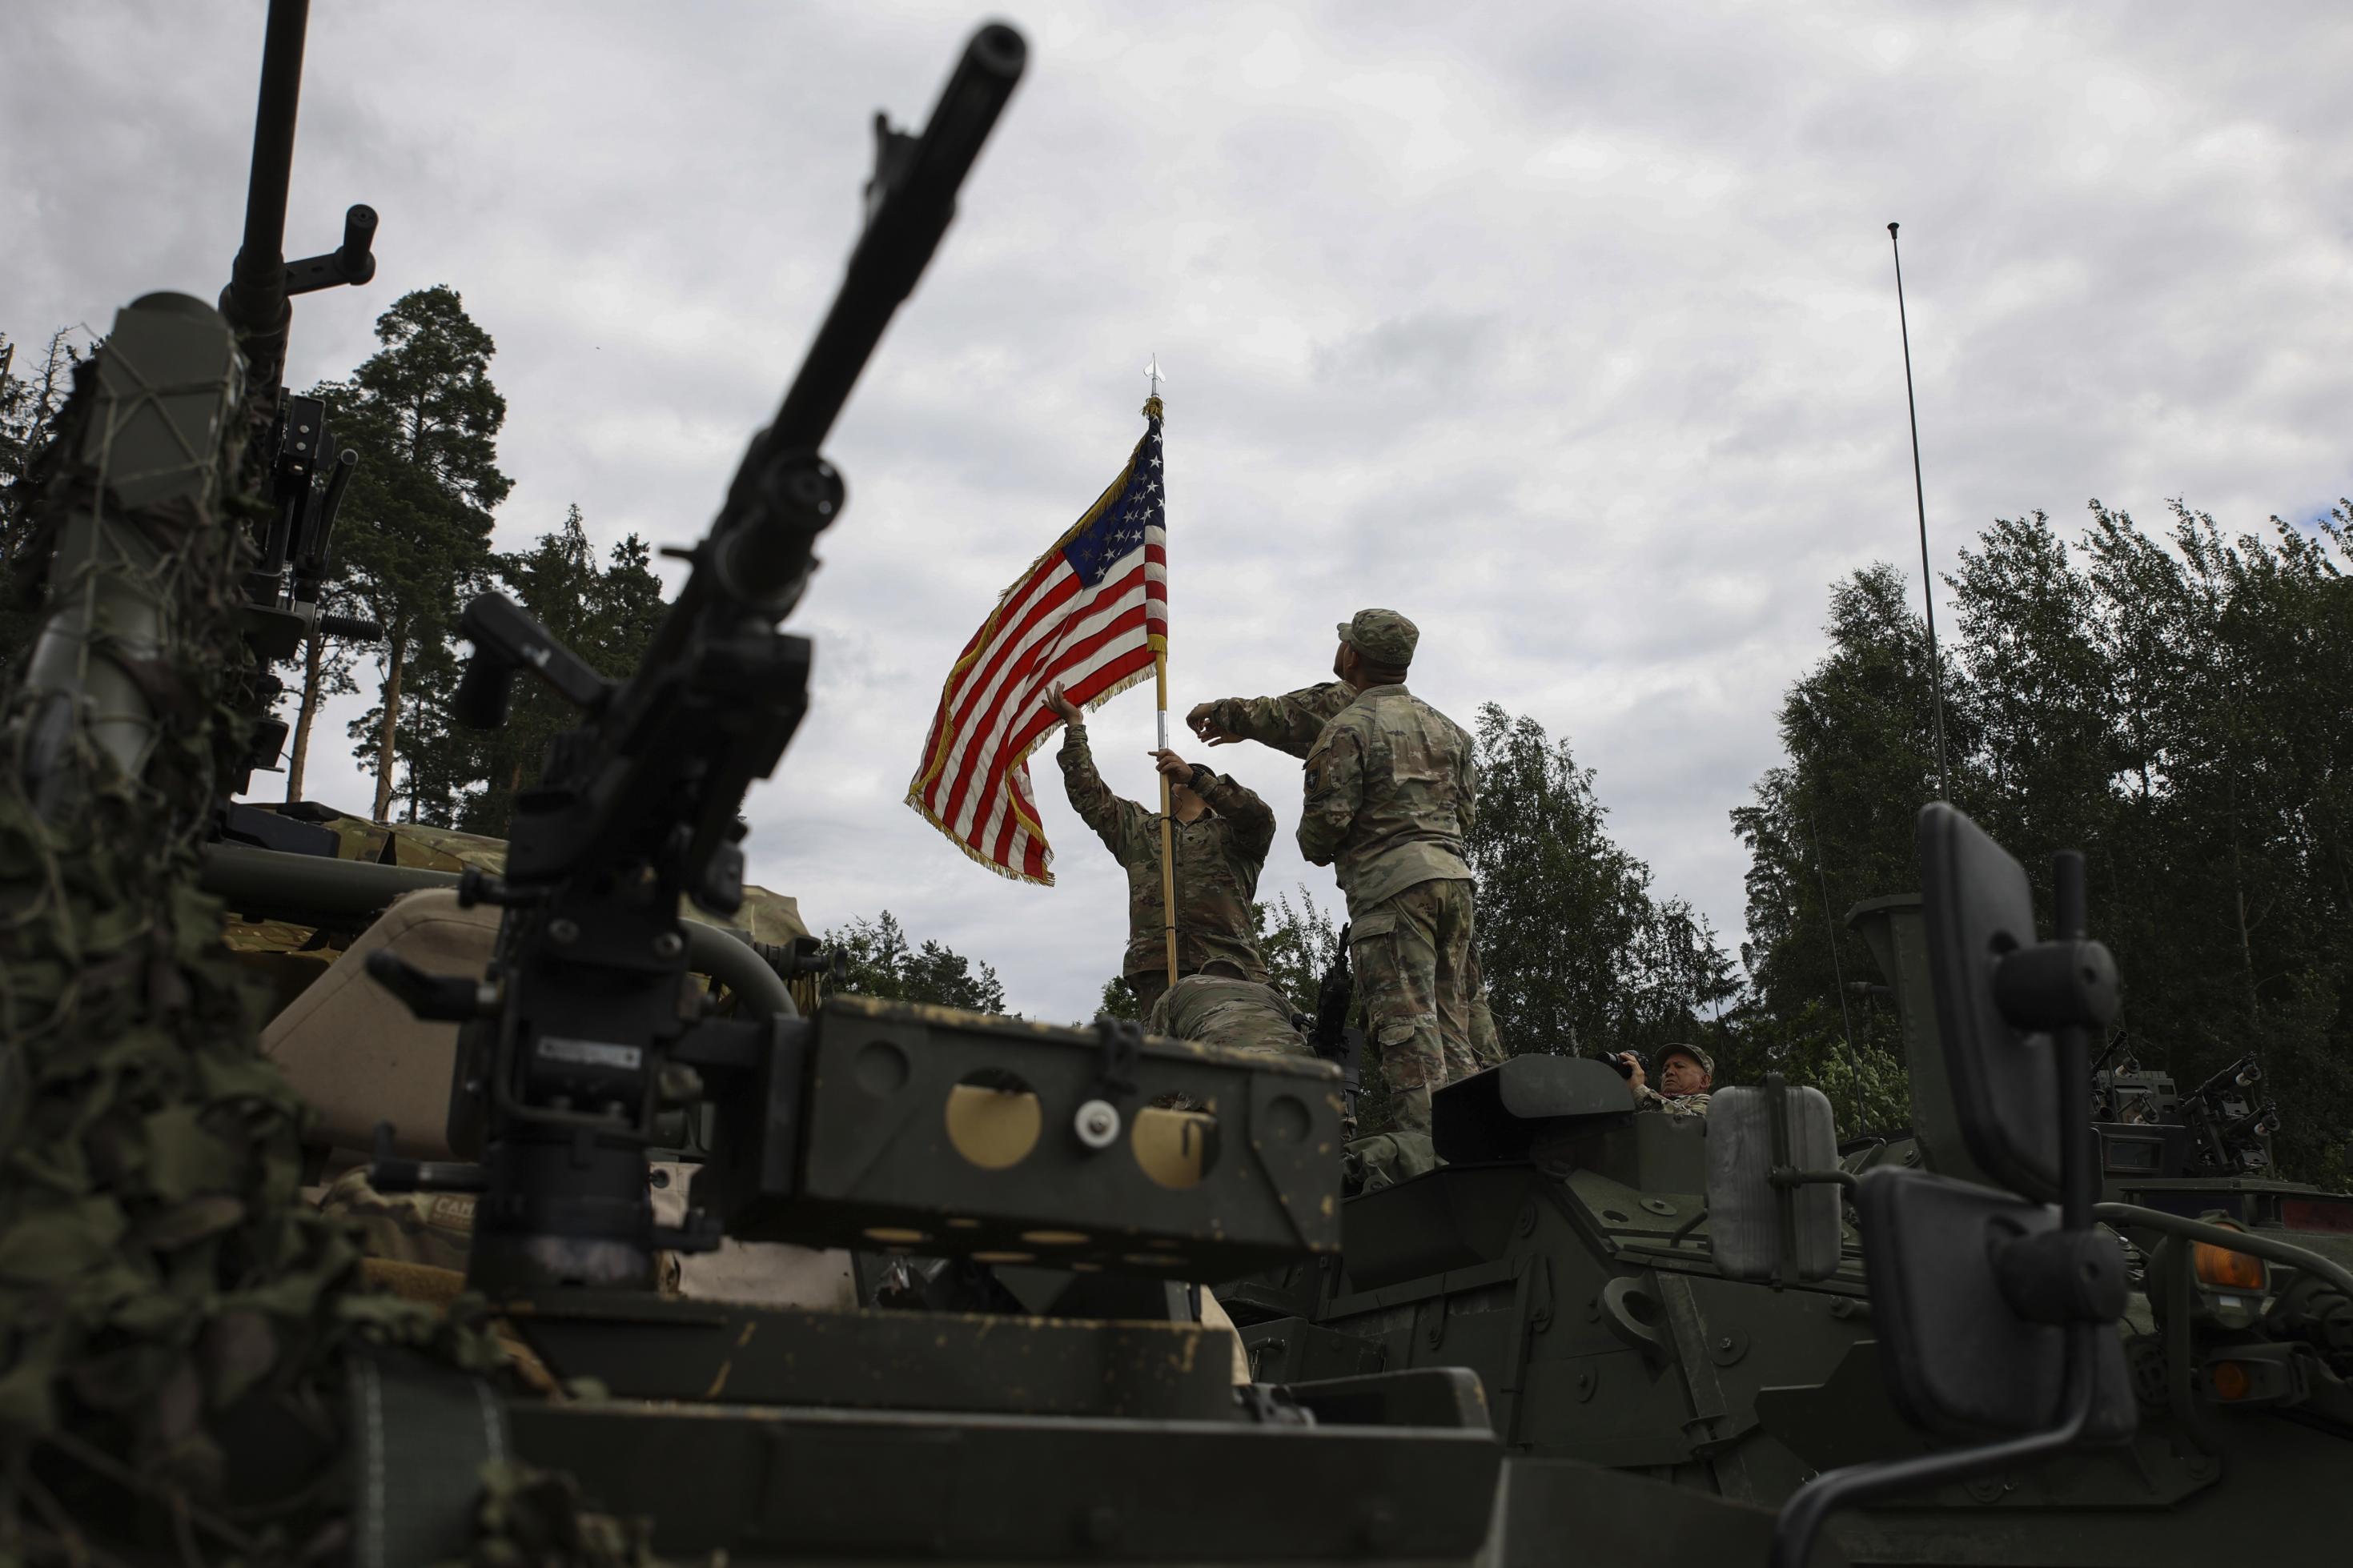 US Soldaten bringen auf einem Militärfahrzeug in der Nähe des polnischen Szypliszki eine US-amerikanische Flagge an.